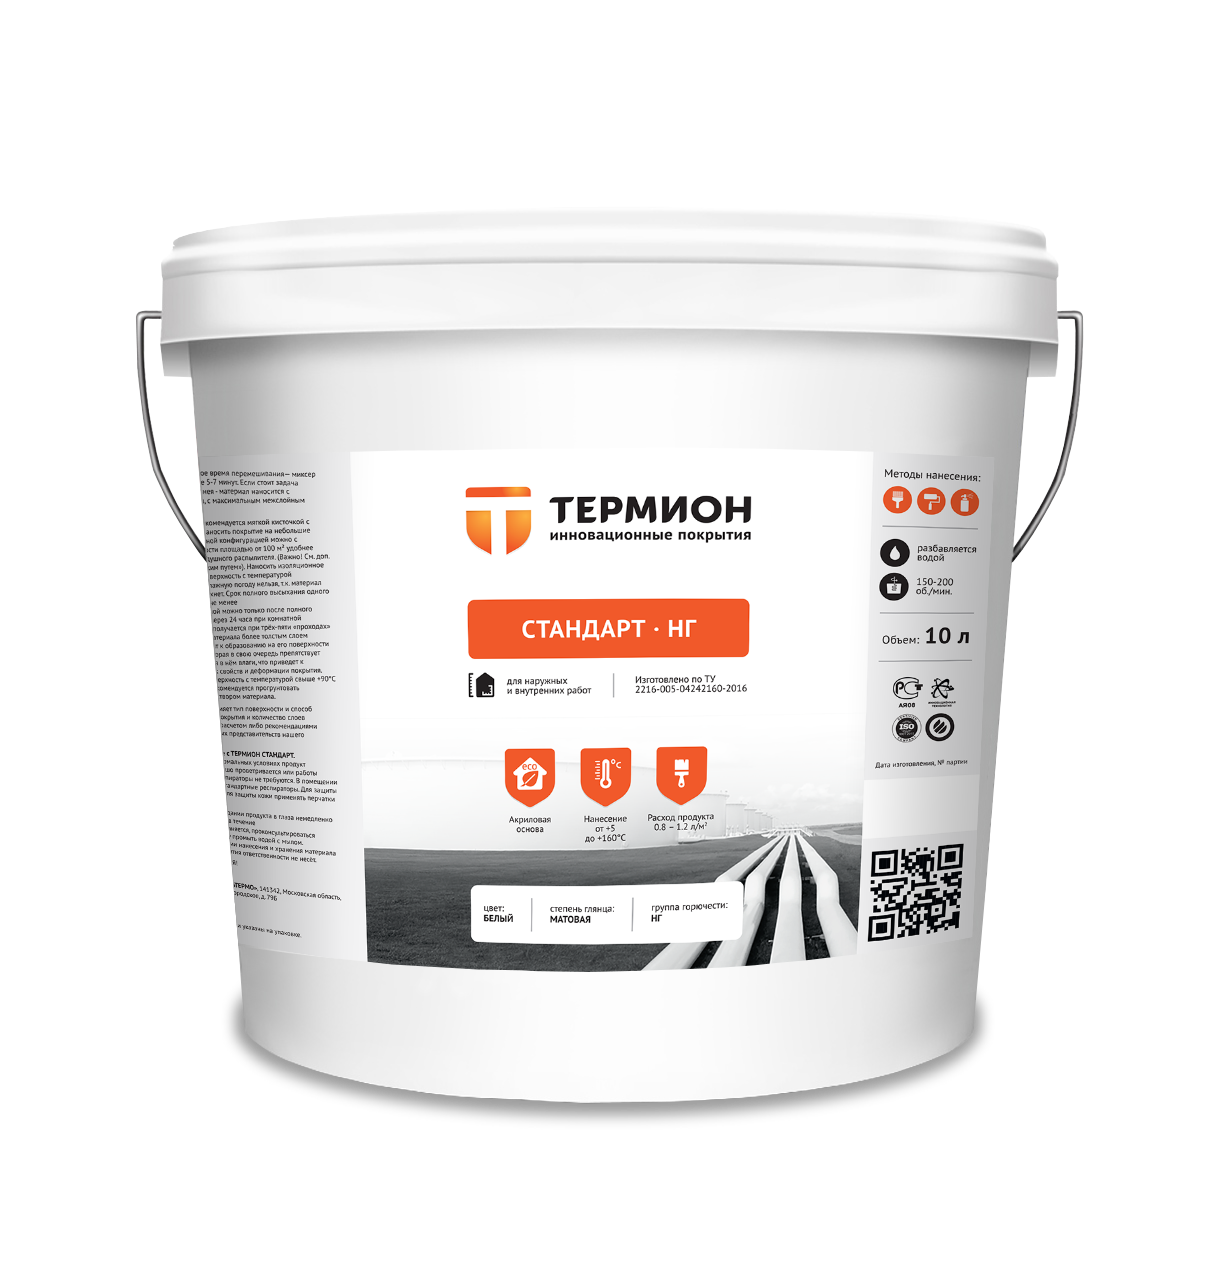 ТЕРМИОН «Стандарт НГ» - негорючая сверхтонкая теплоизоляция трубопроводов, резервуаров, цистерн 10 л